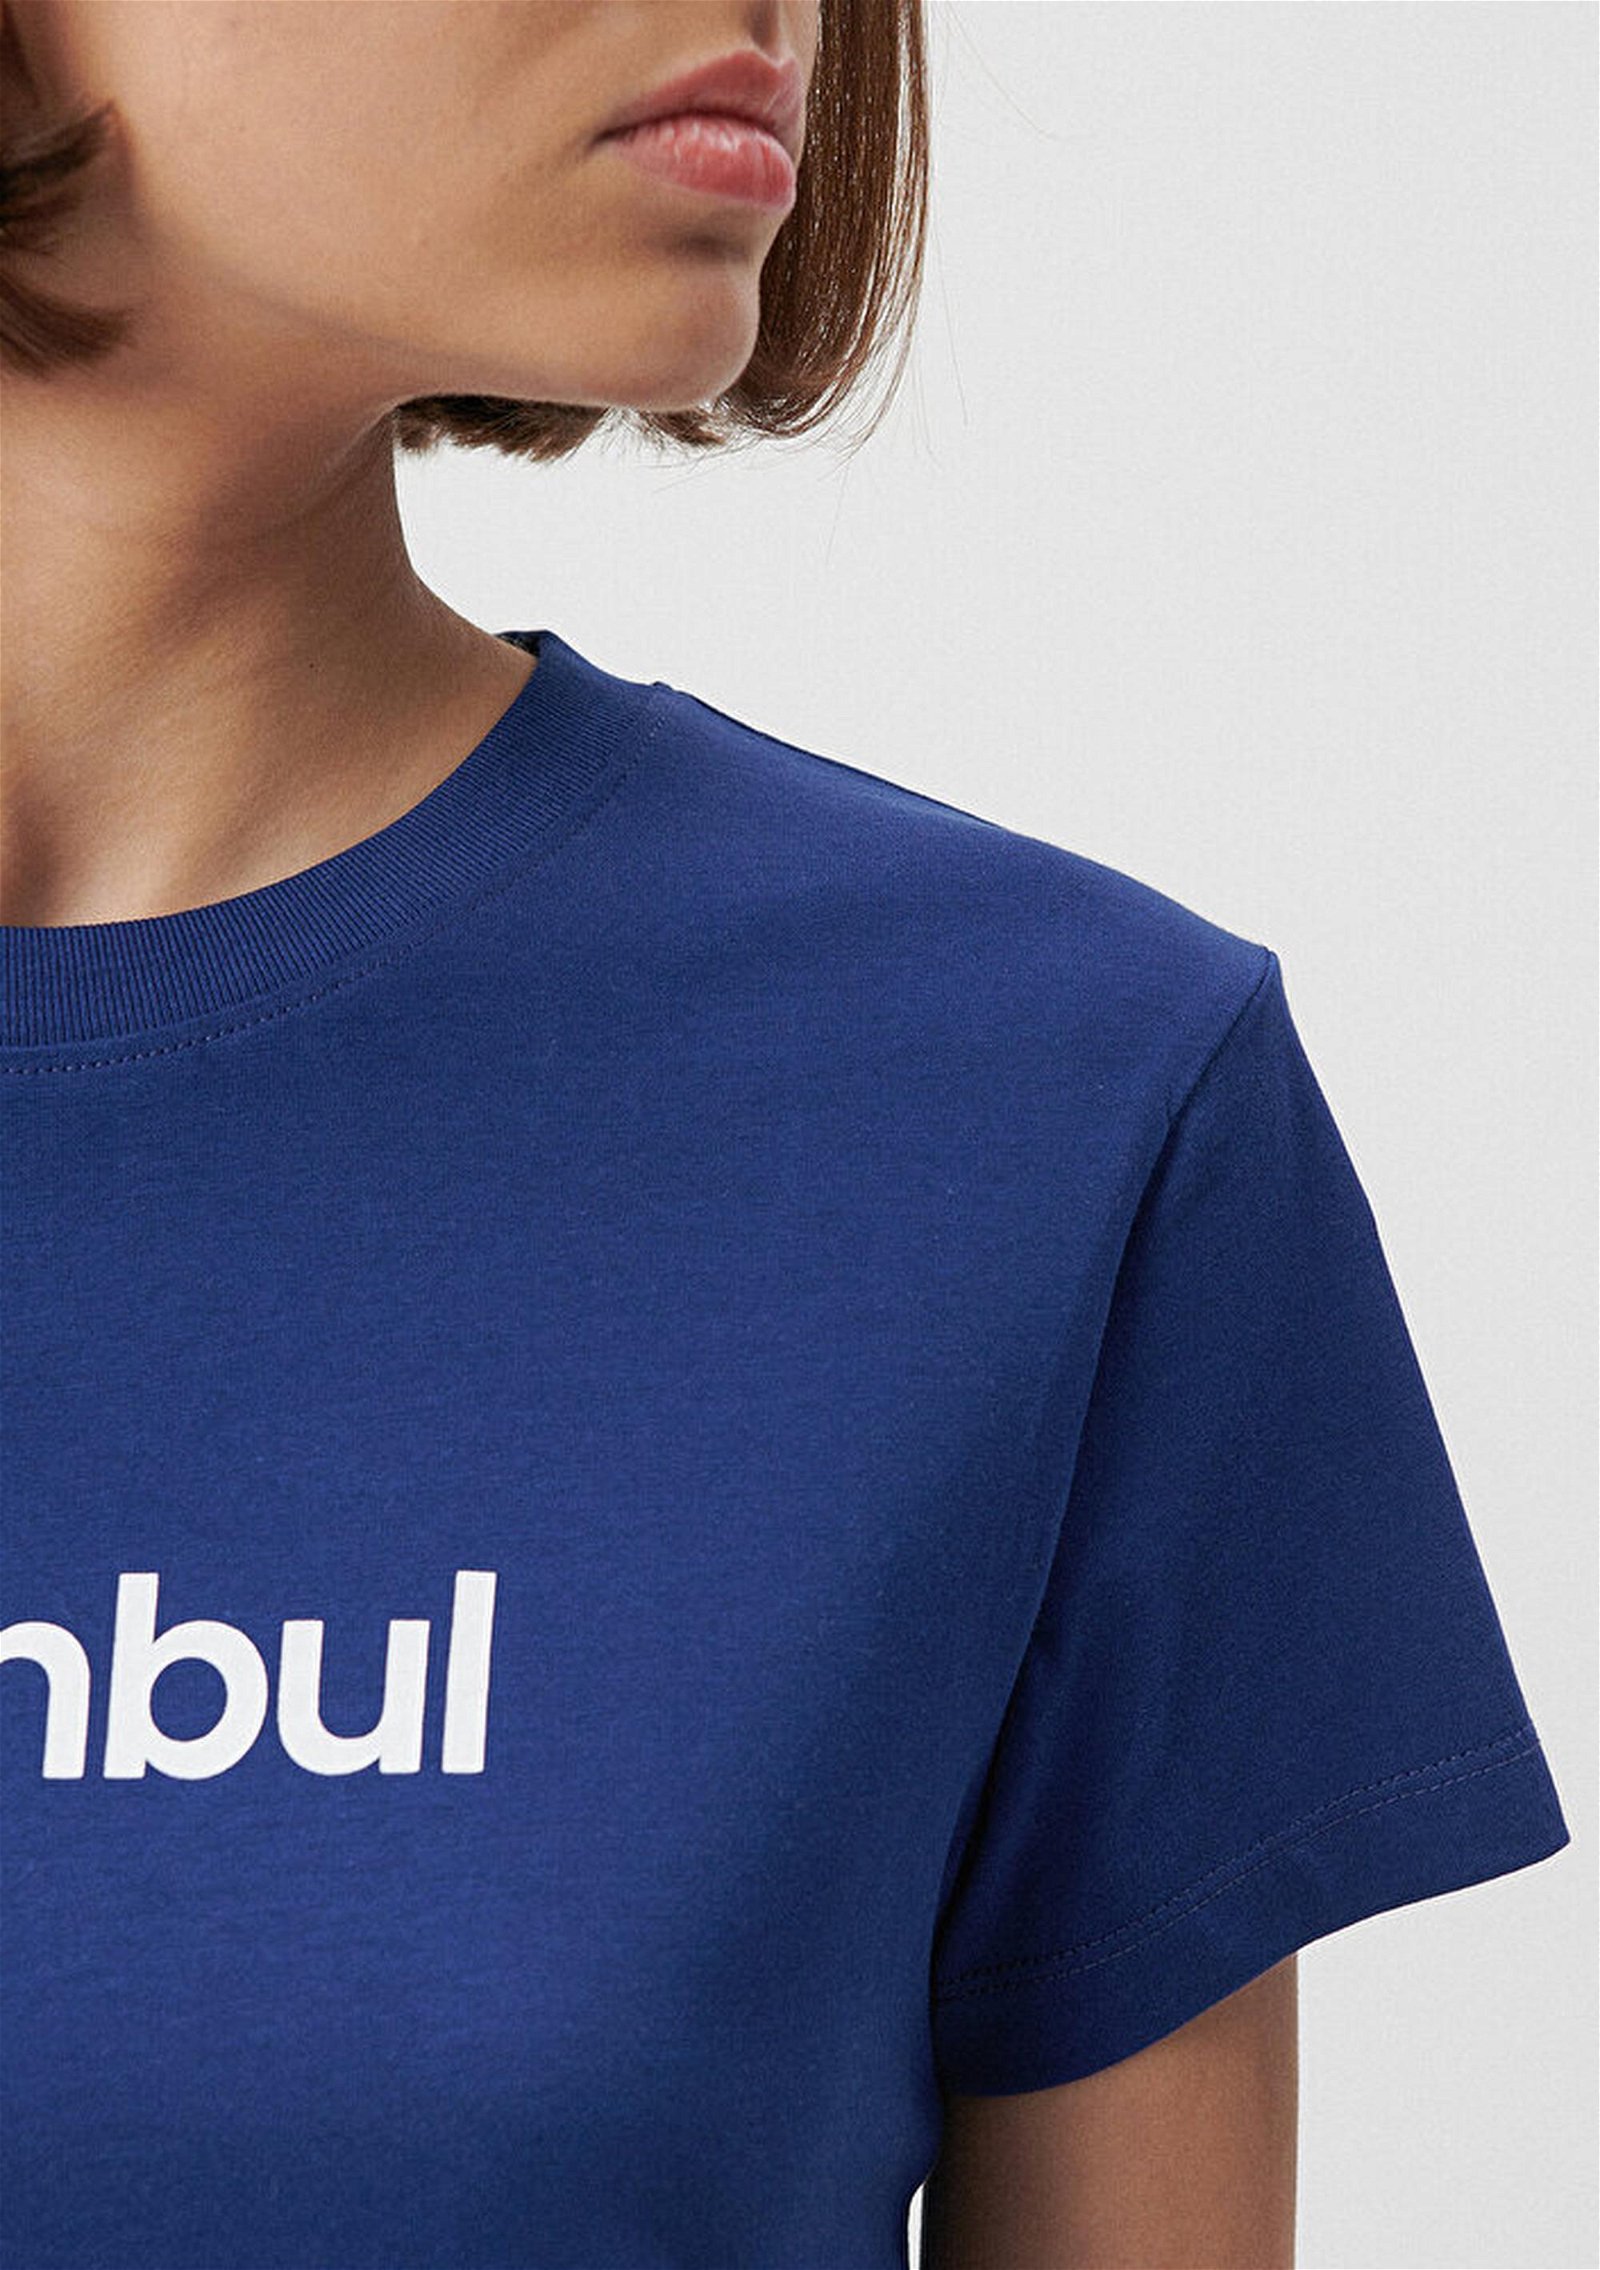 Mavi İstanbul Baskılı Mavi Tişört Slim Fit / Dar Kesim 1612111-70722